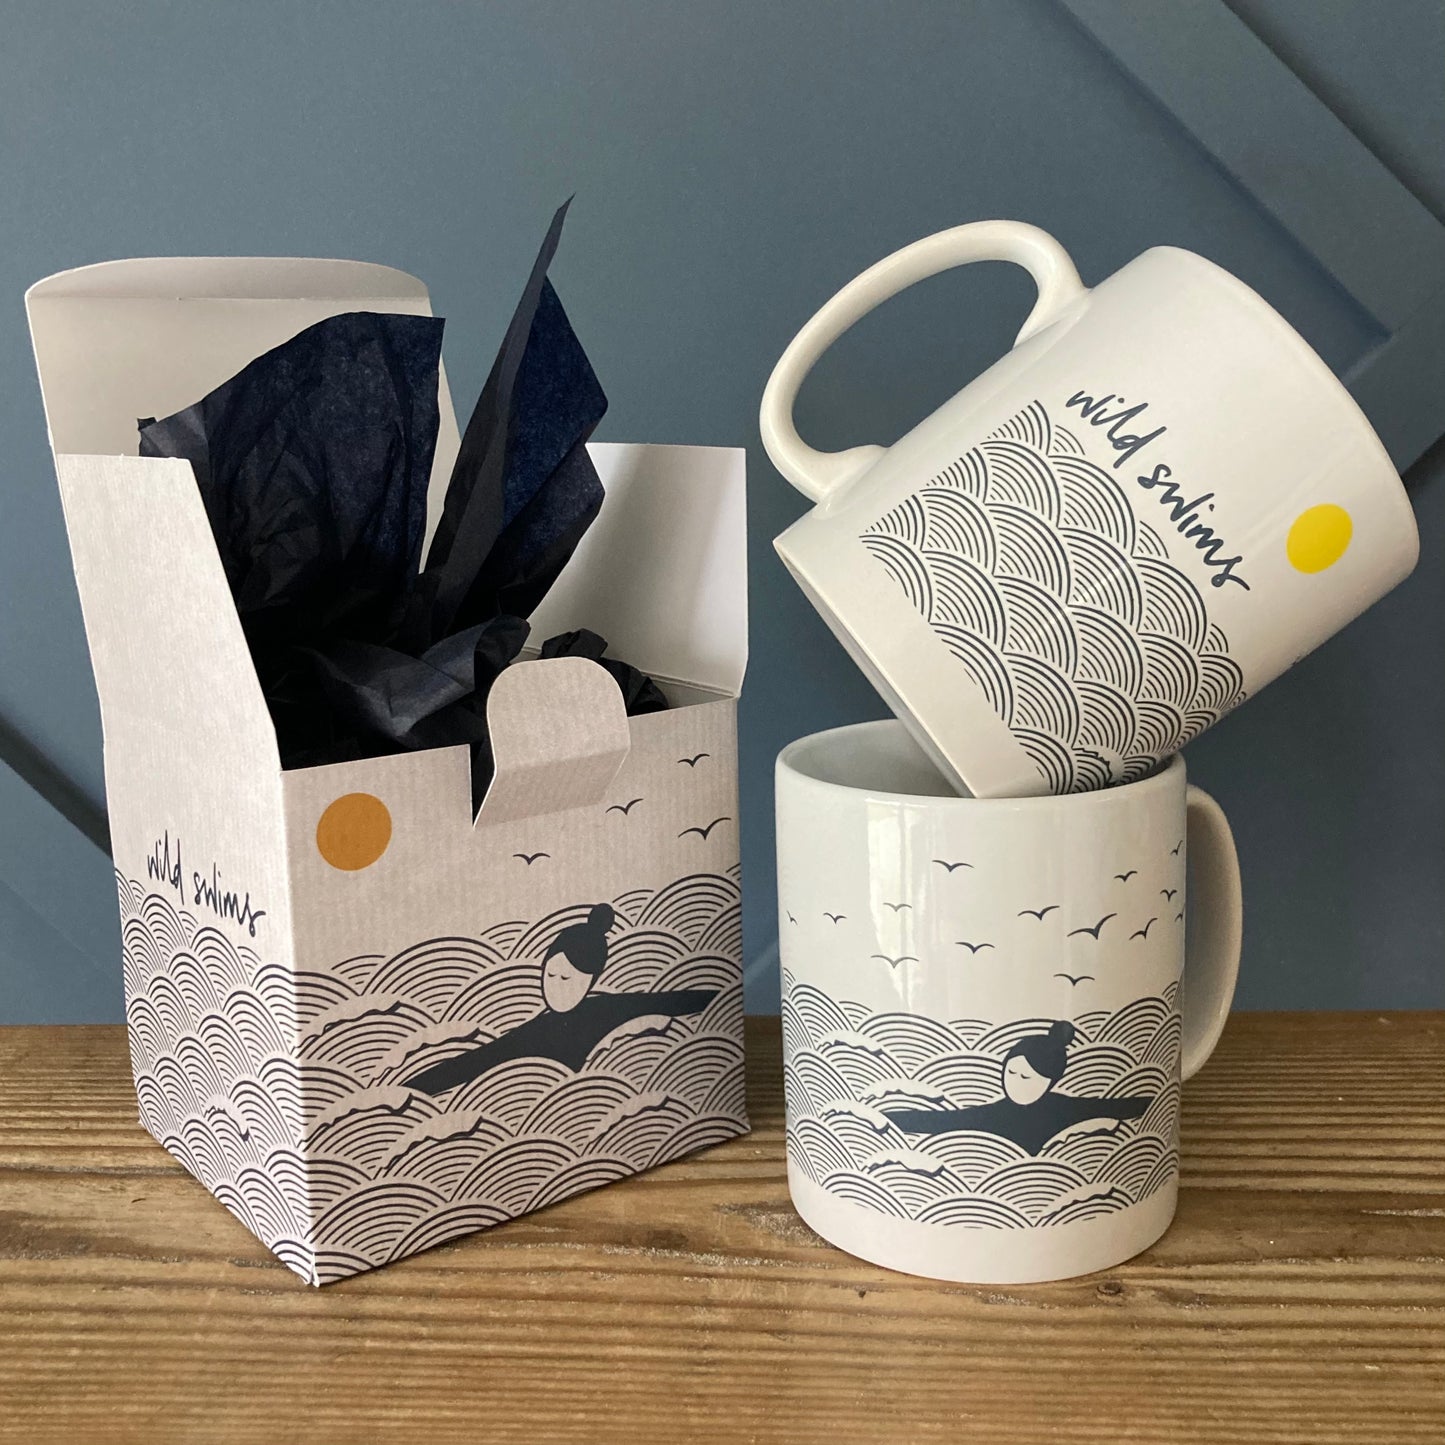 Wild swimming ceramic mug with gift box